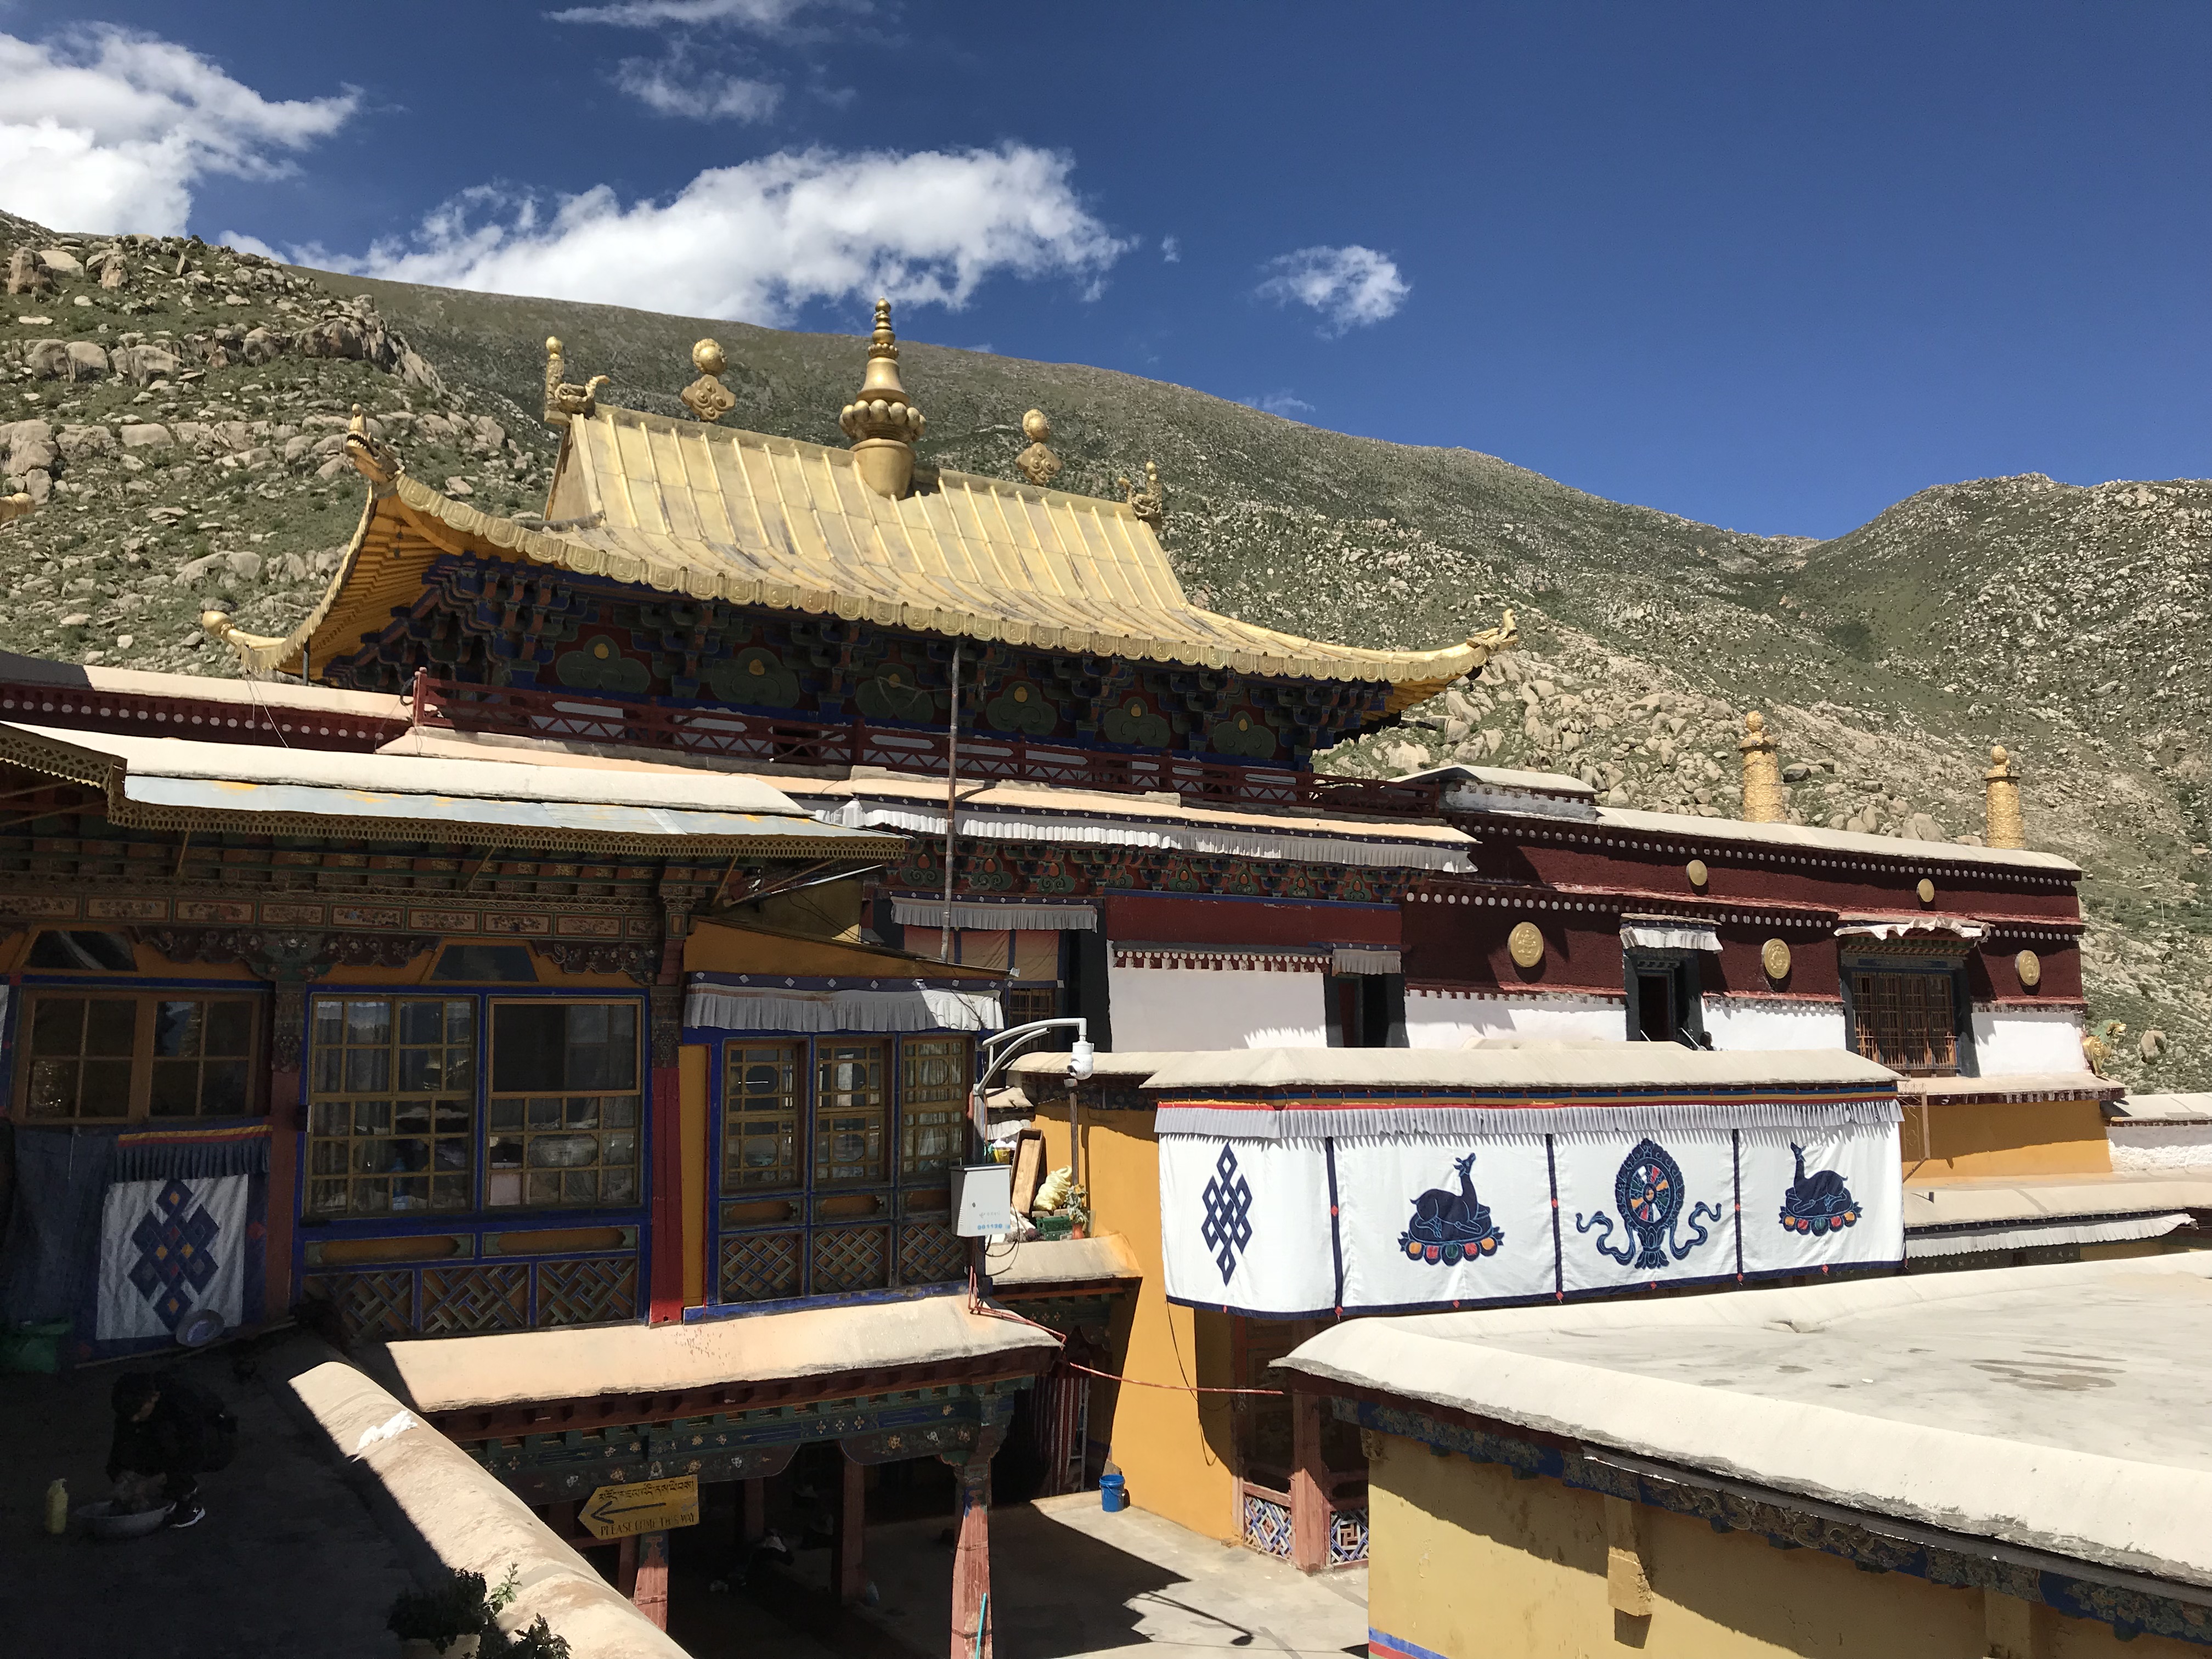 【携程攻略】拉萨哲蚌寺景点,哲蚌寺是藏传佛教格鲁派寺院，与甘丹寺、色拉寺并称为拉萨三大寺。“…